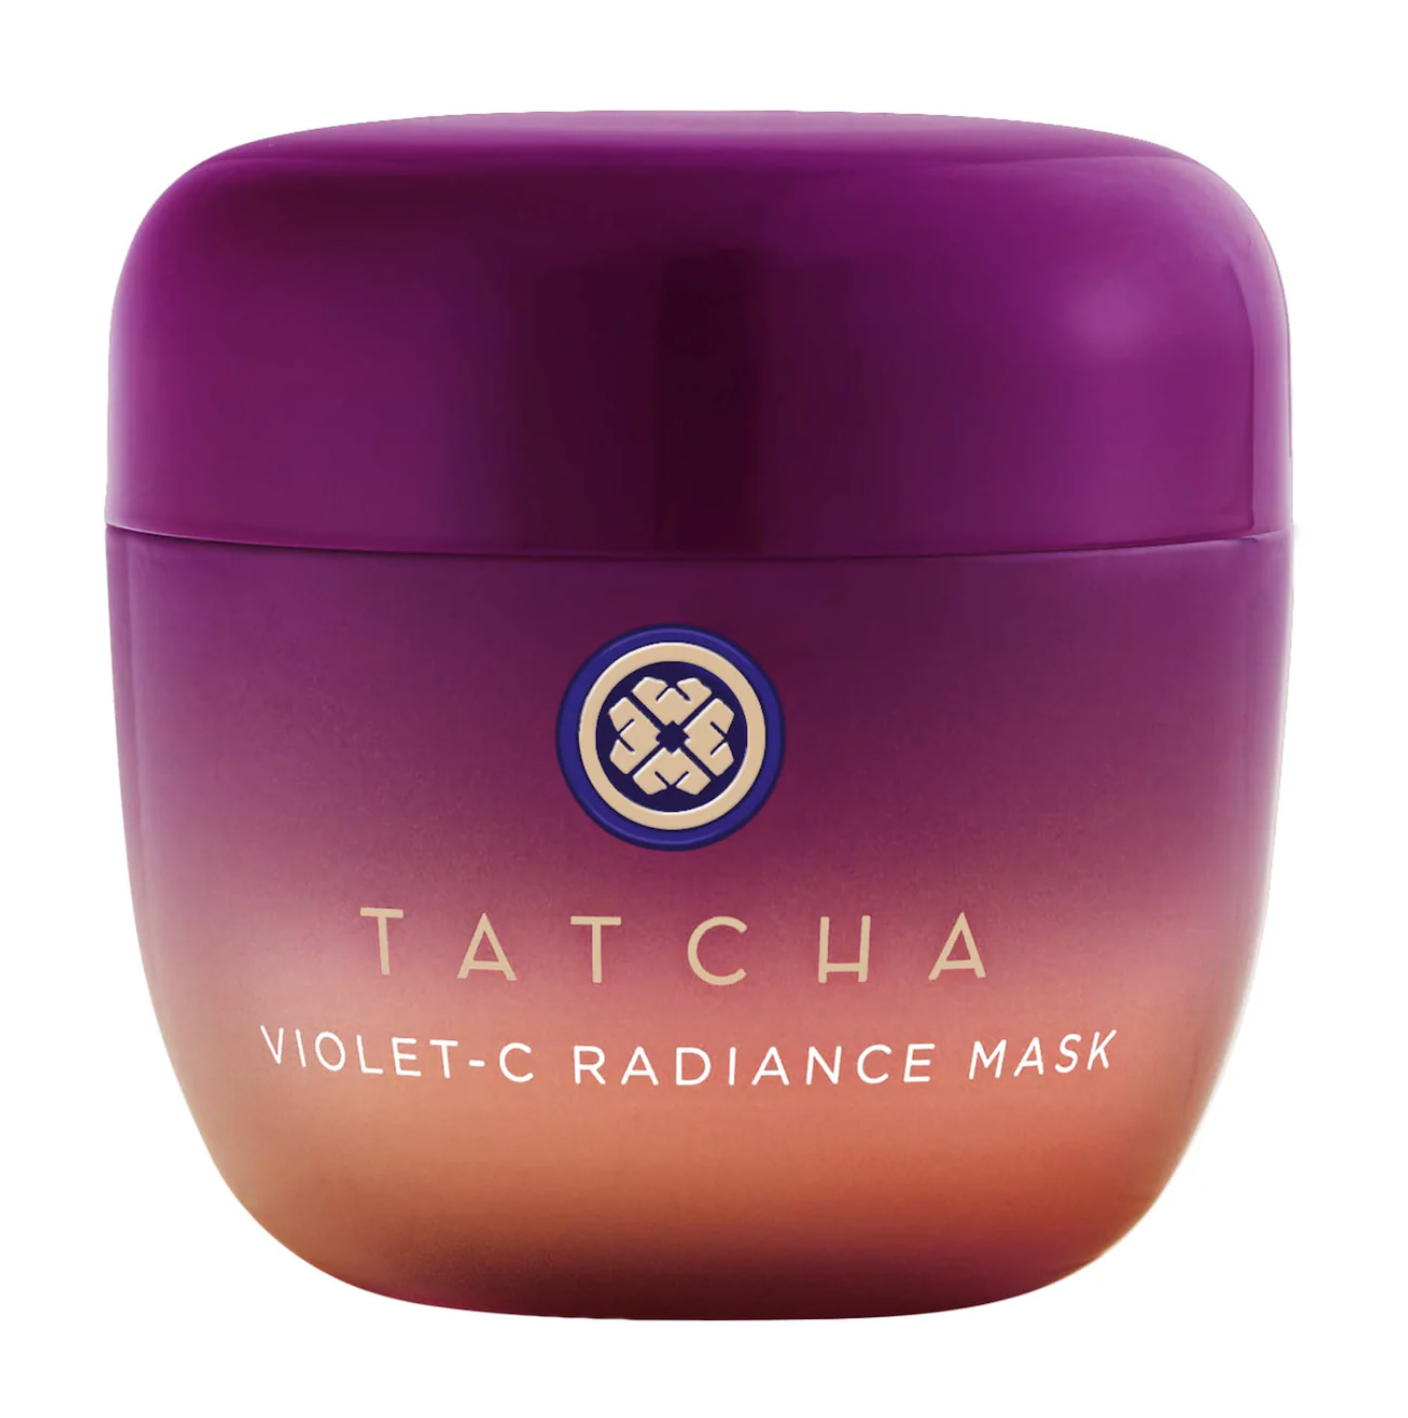 Jar of Tatcha Violet-C Radiance Mask with ombre design